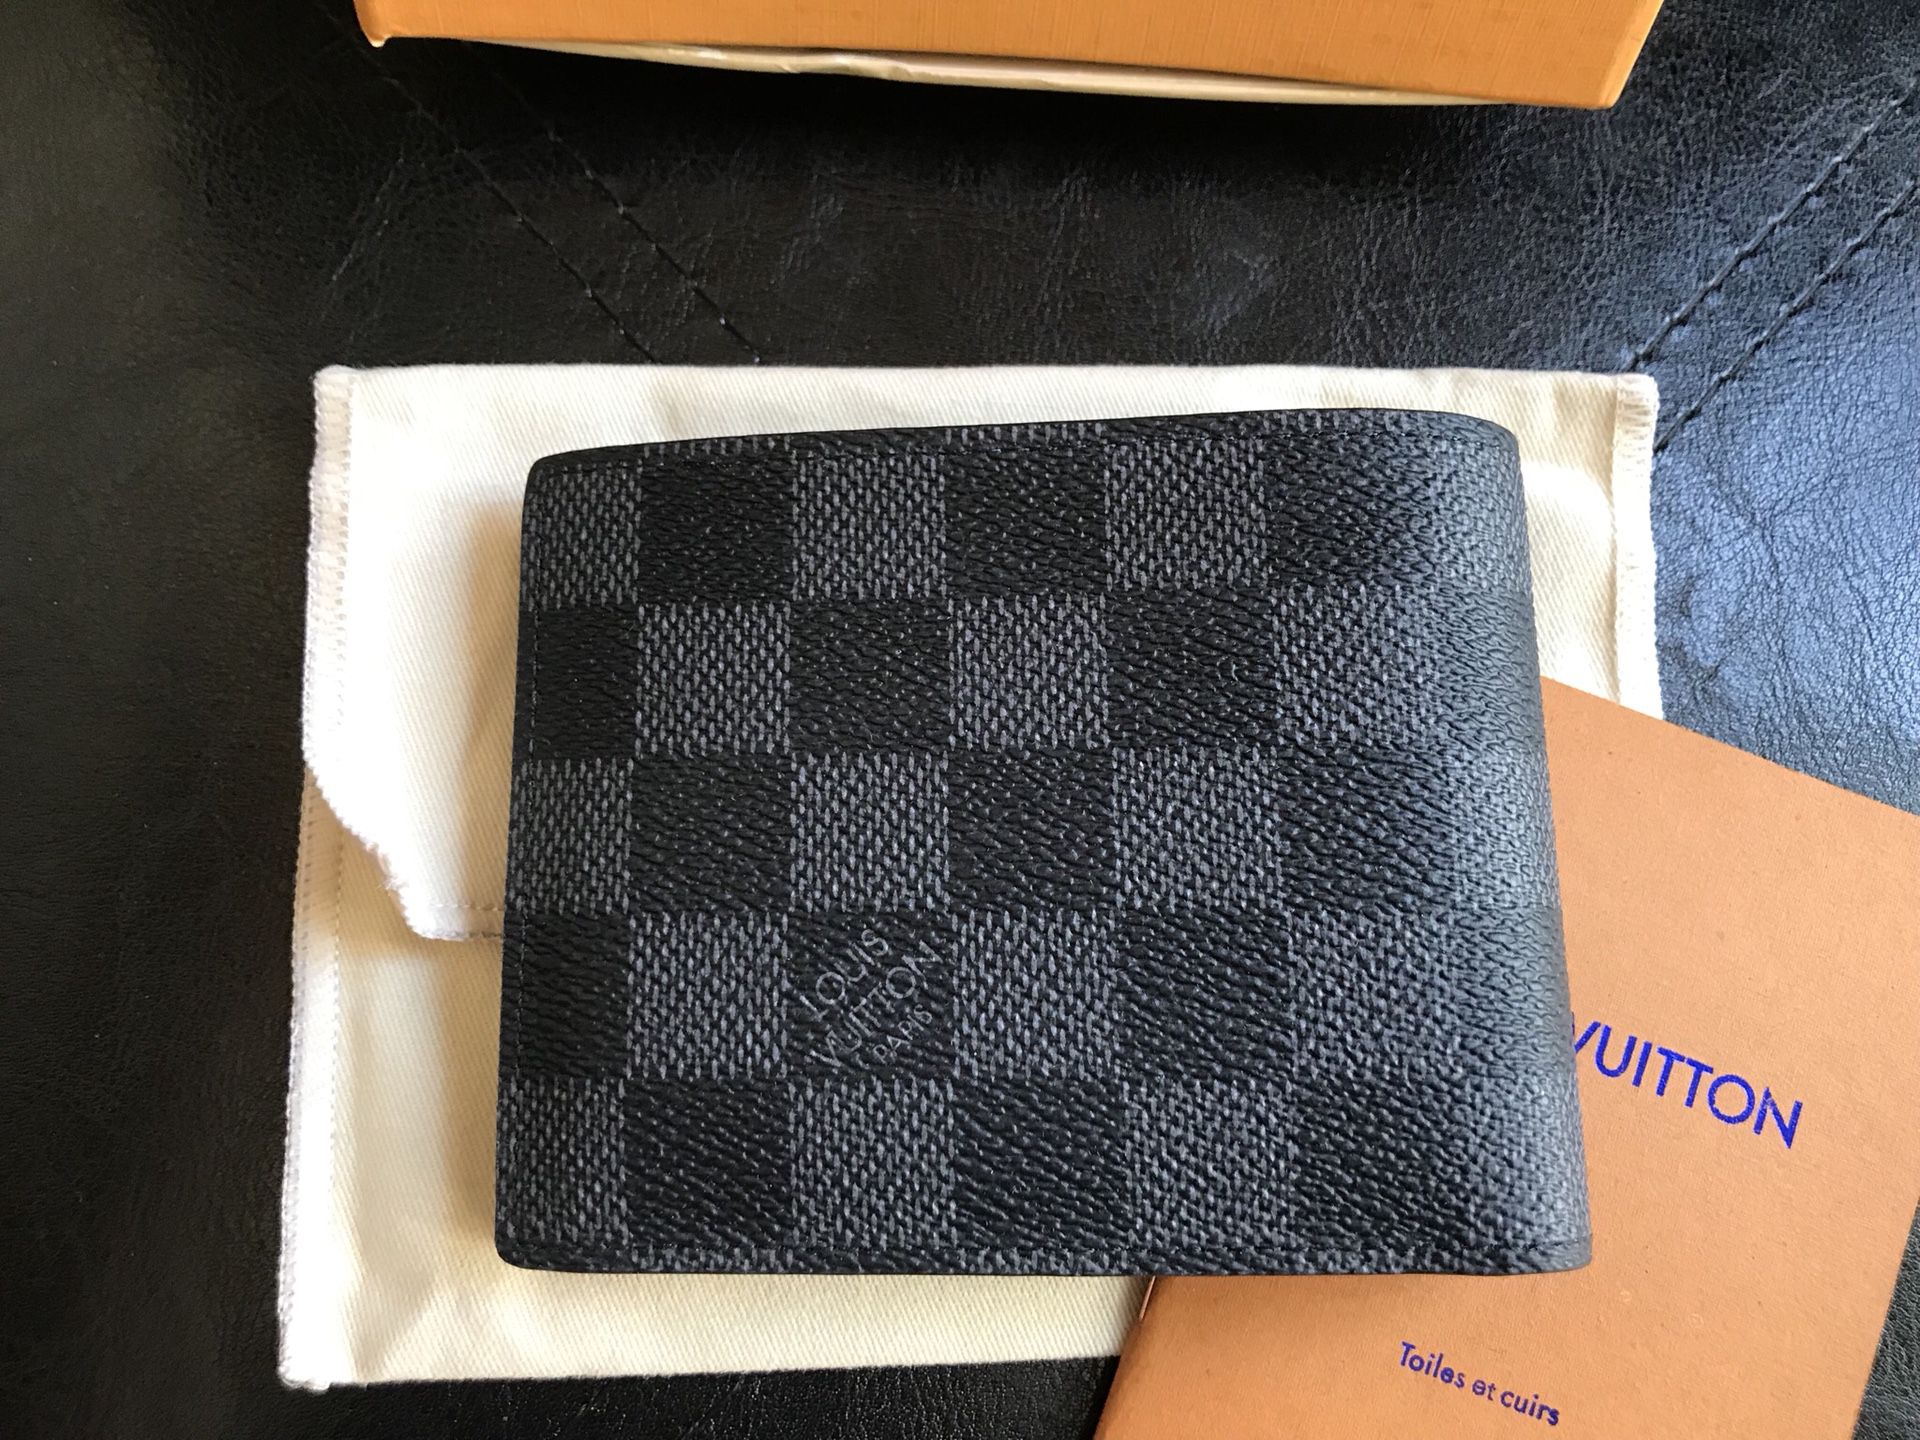 Louis Vuitton Damier graphite stripe slender men's wallet for Sale in  Renton, WA - OfferUp